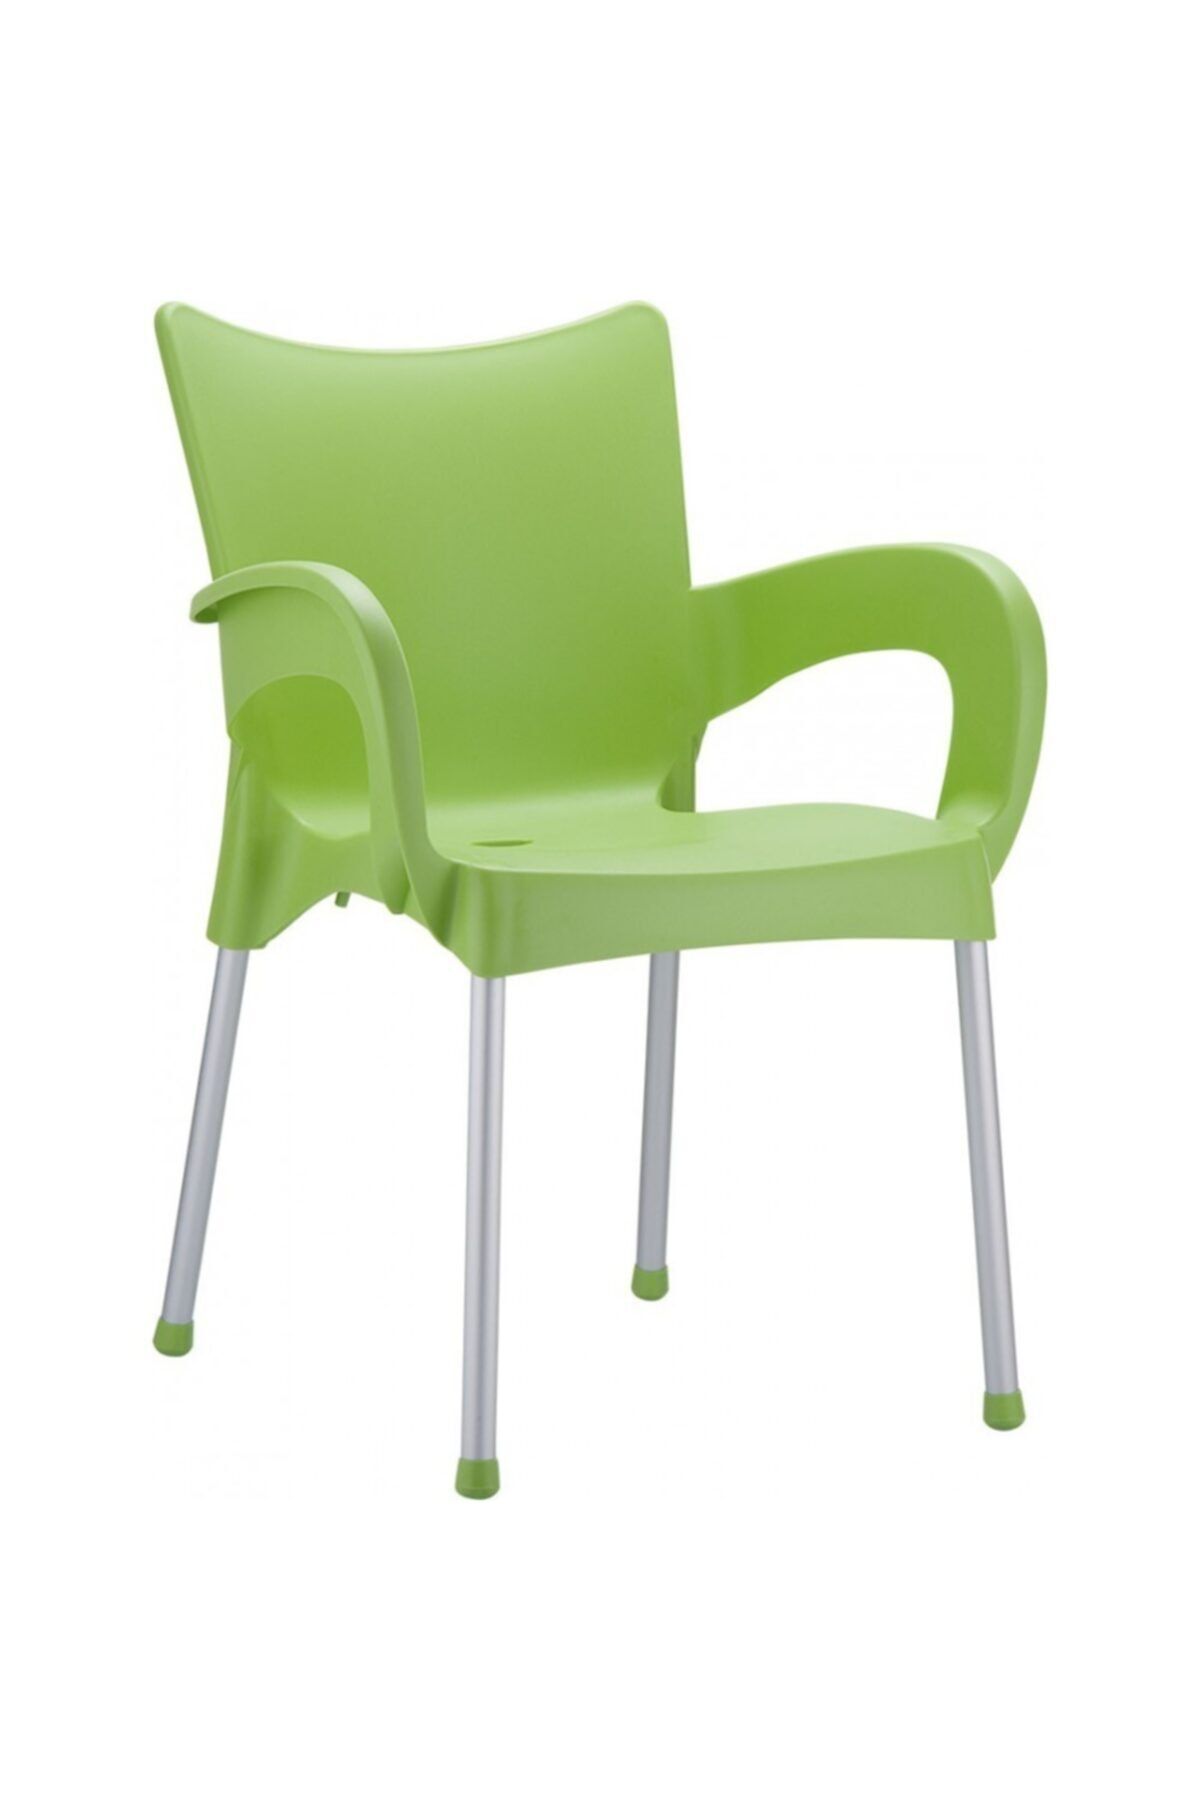 Siesta Romeo Sandalye Fıstık Yeşili